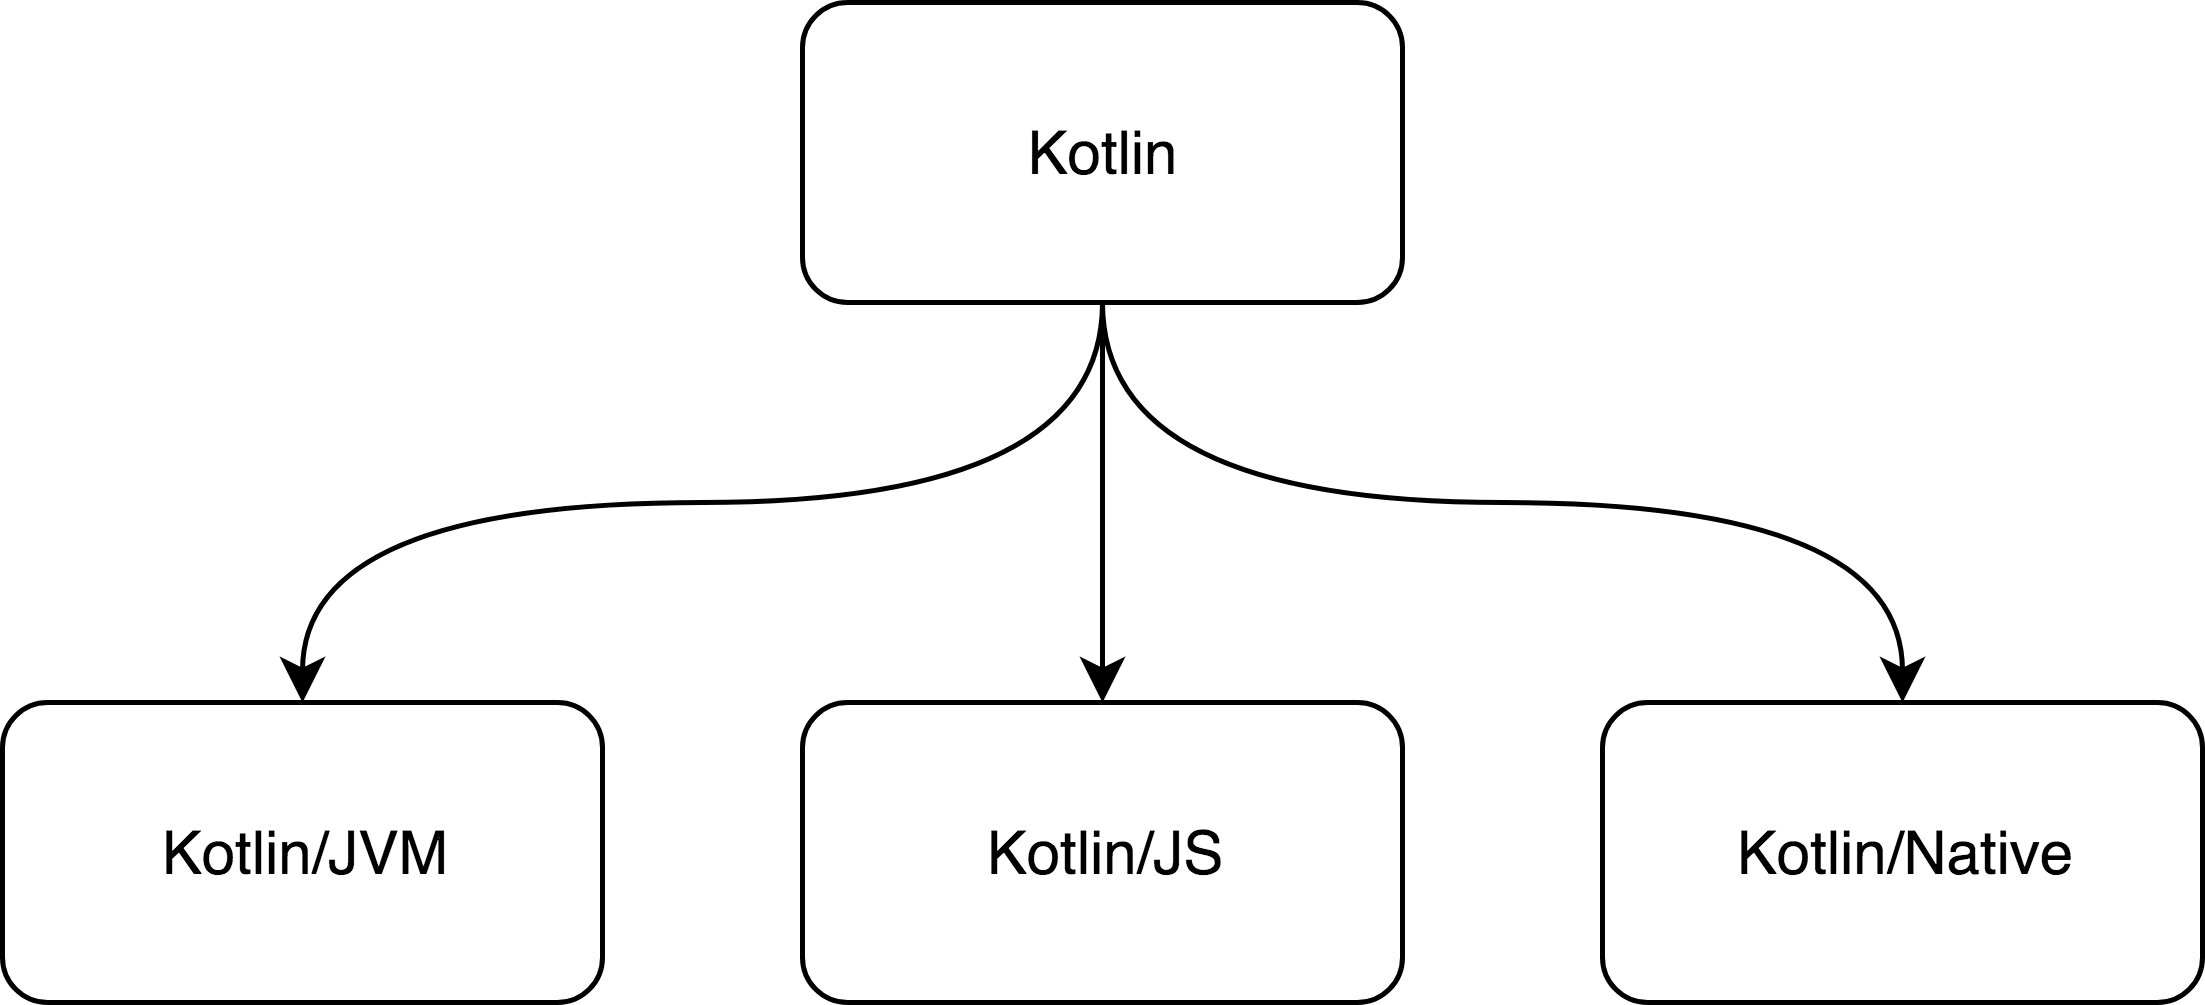 Kotlin peut fonctionner sur plusieurs plateformes. (JVM / JS / Native)